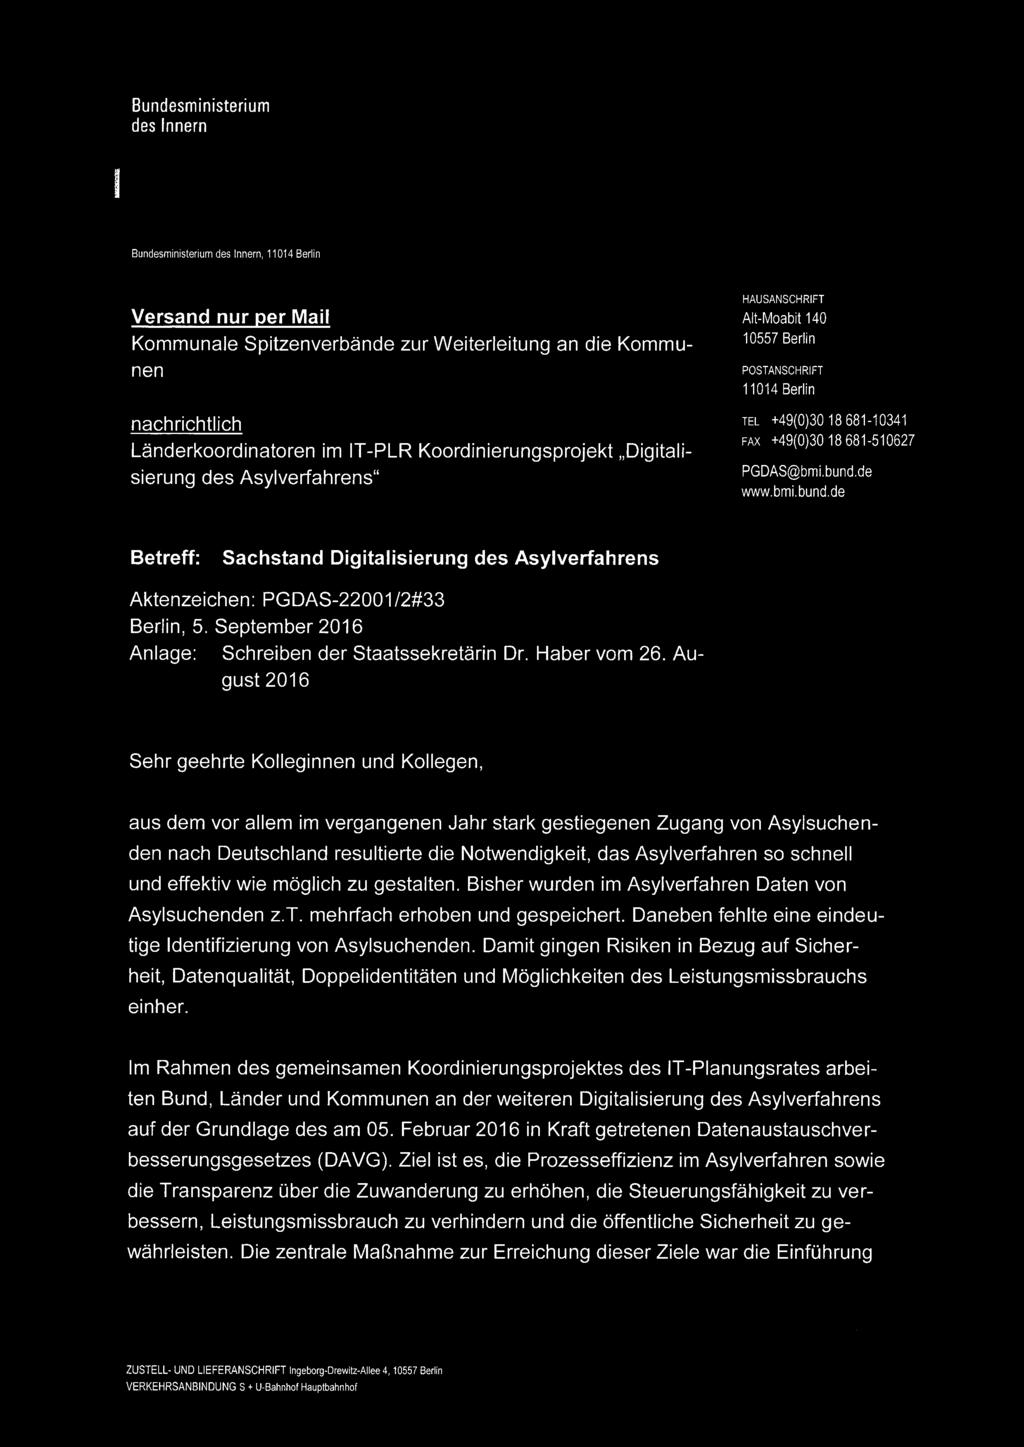 de www.bmi.bund.de Betreff: Sachstand Digitalisierung des Asylverfahrens Aktenzeichen: PGDAS-22001/2#33 Berlin, 5. September 2016 Anlage: Schreiben der Staatssekretärin Dr. Haber vom 26.